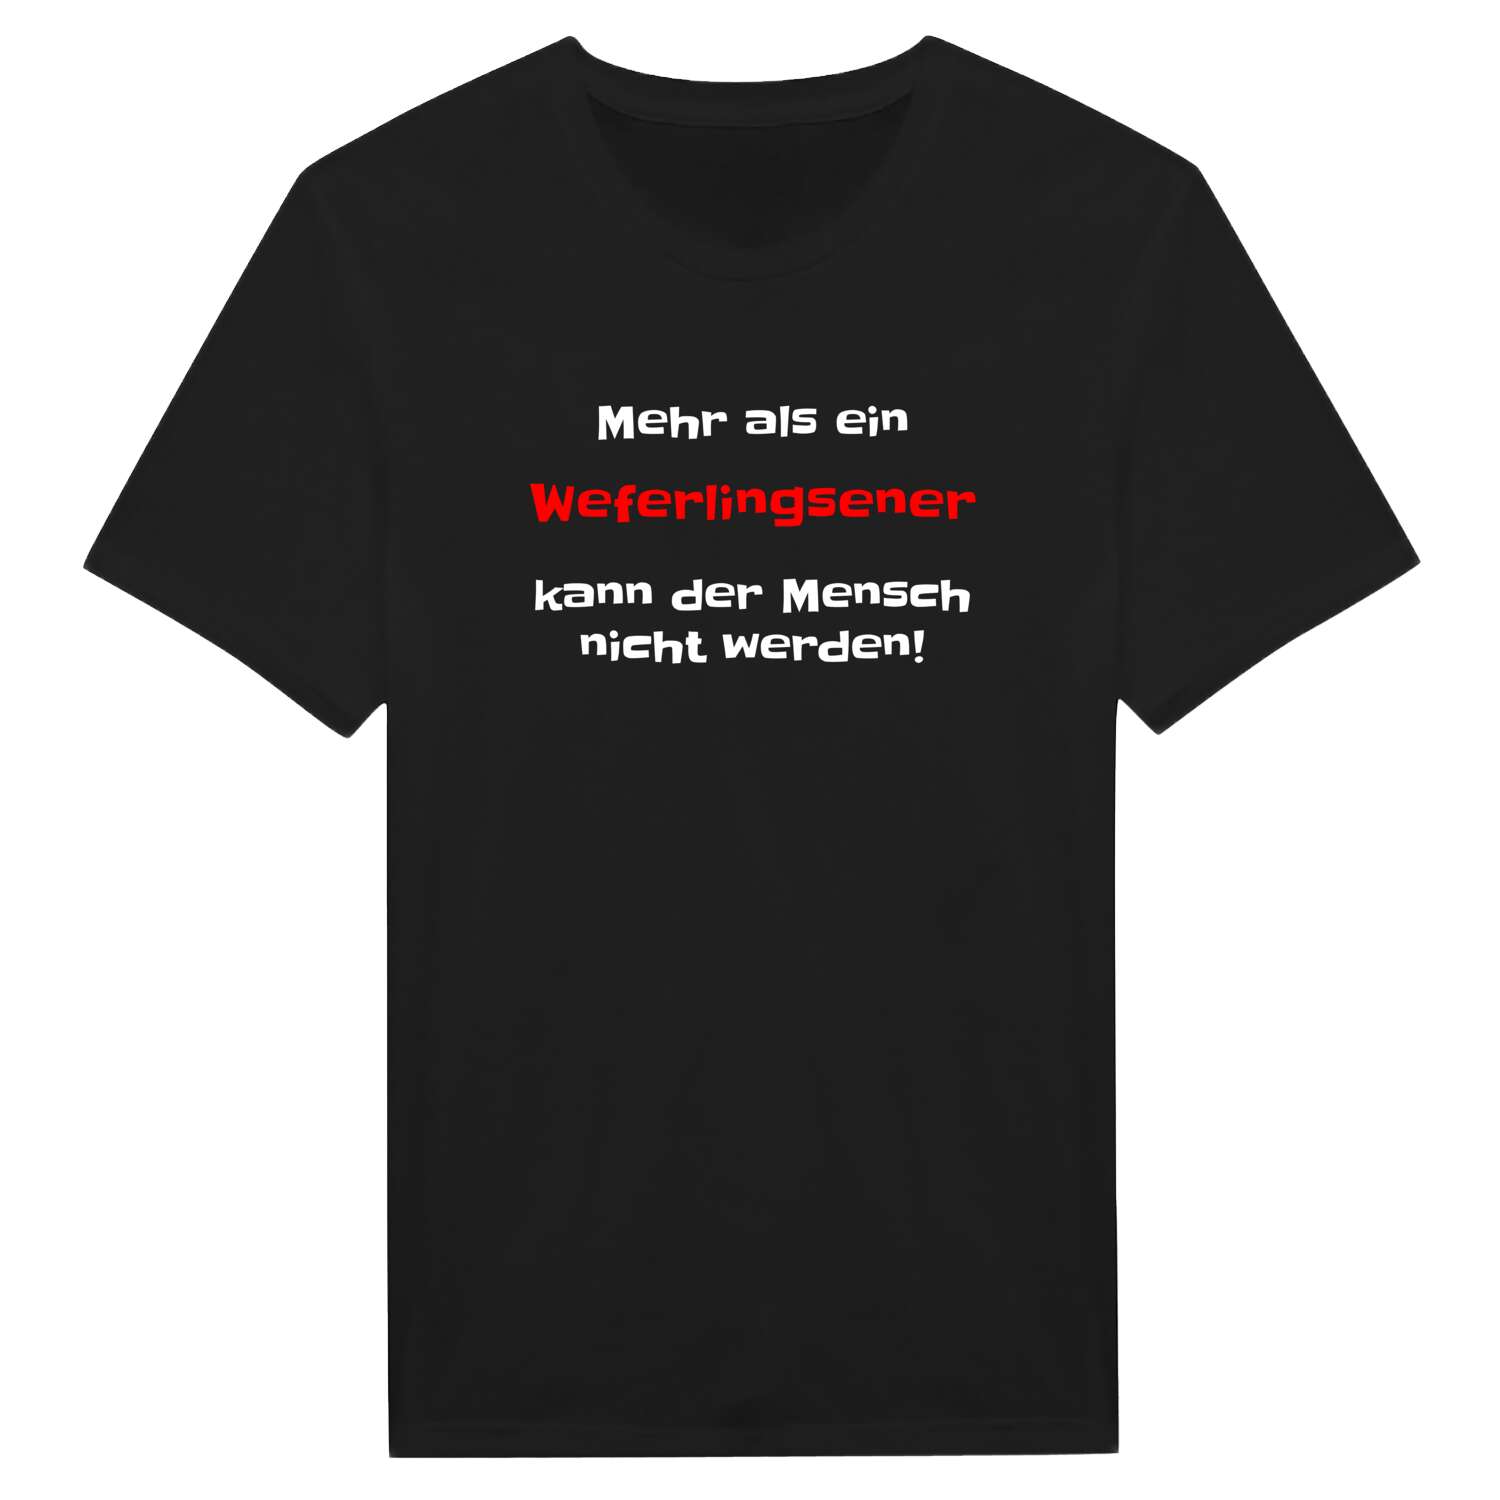 Weferlingsen T-Shirt »Mehr als ein«